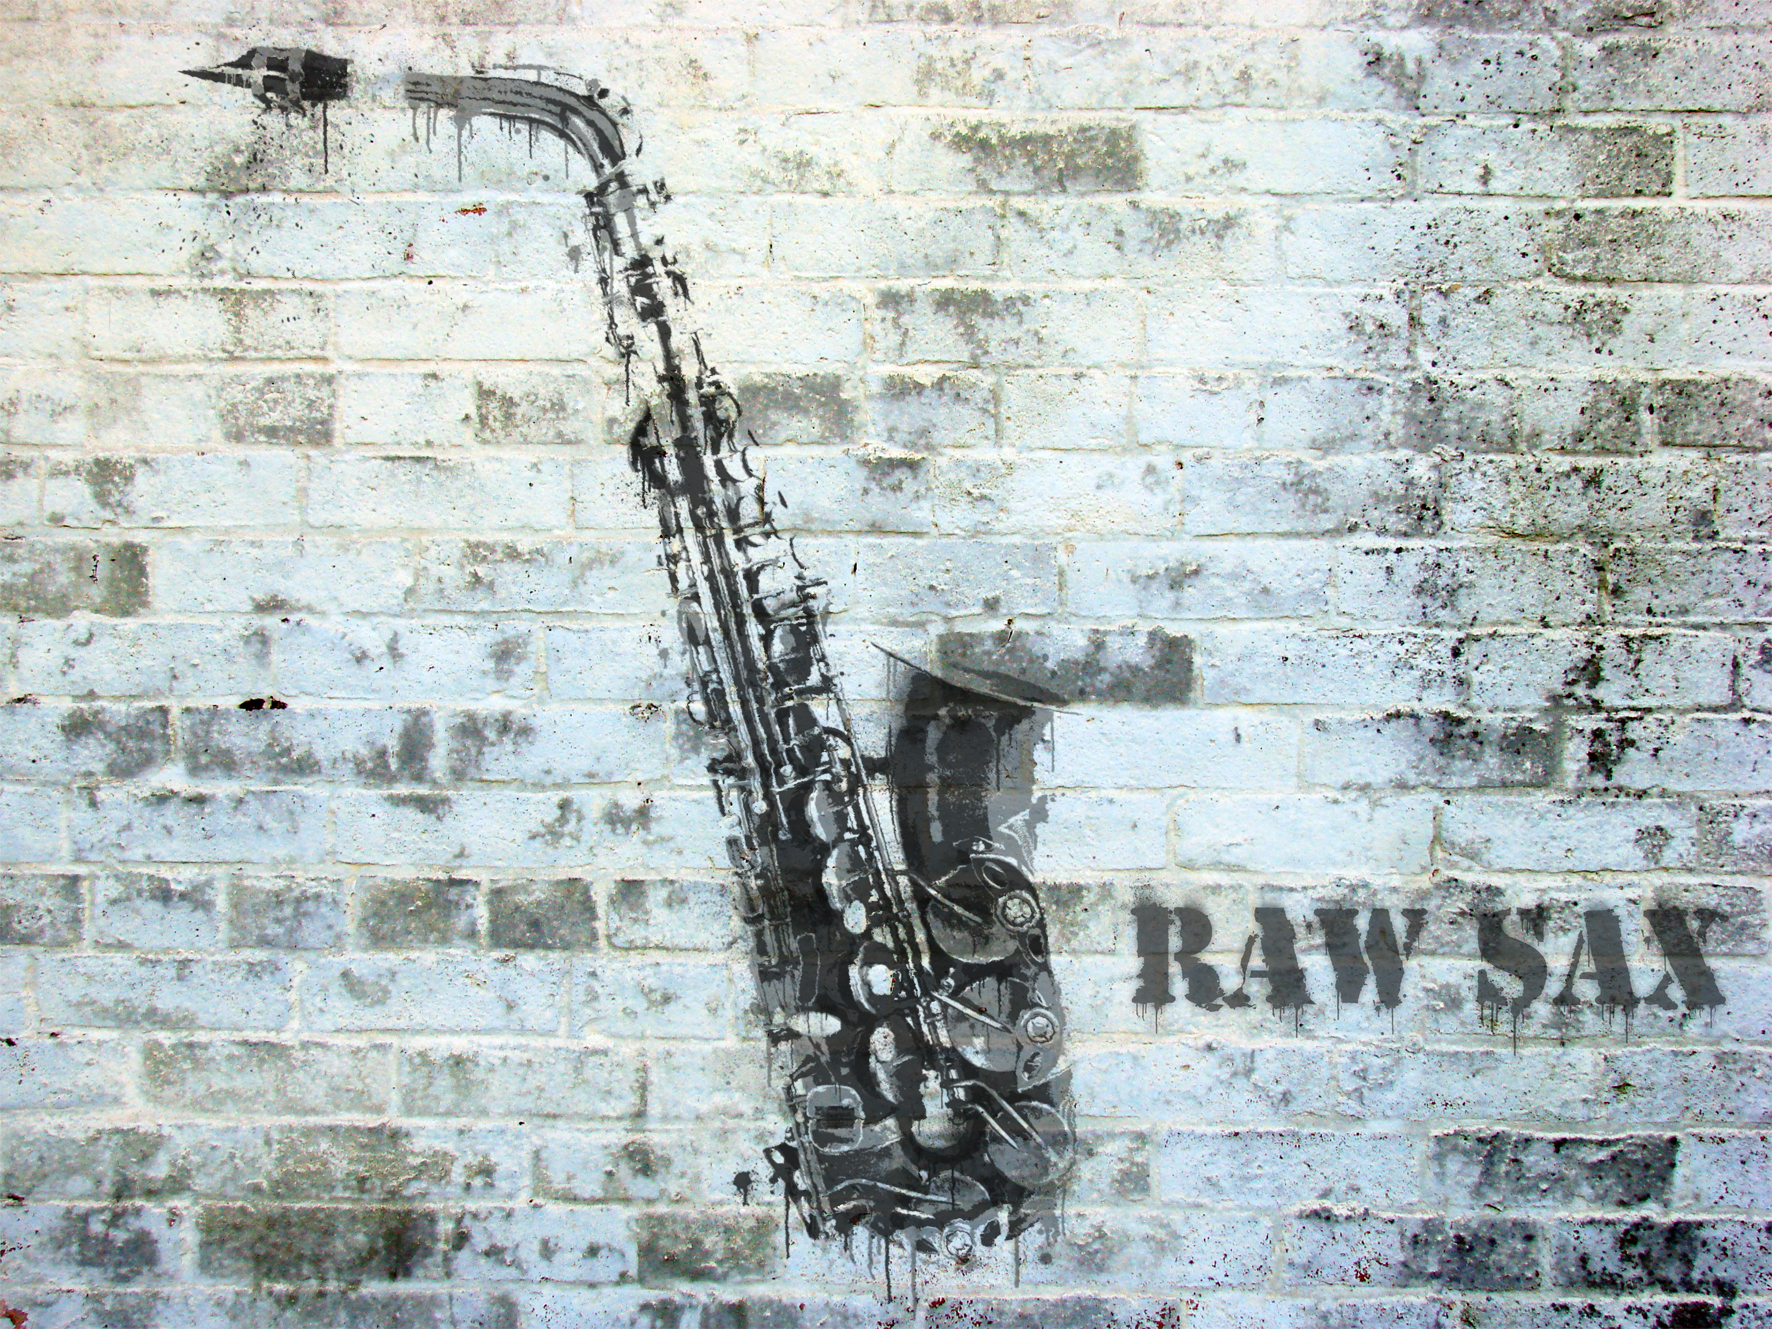 Raw Sax stencil grafitti.jpg